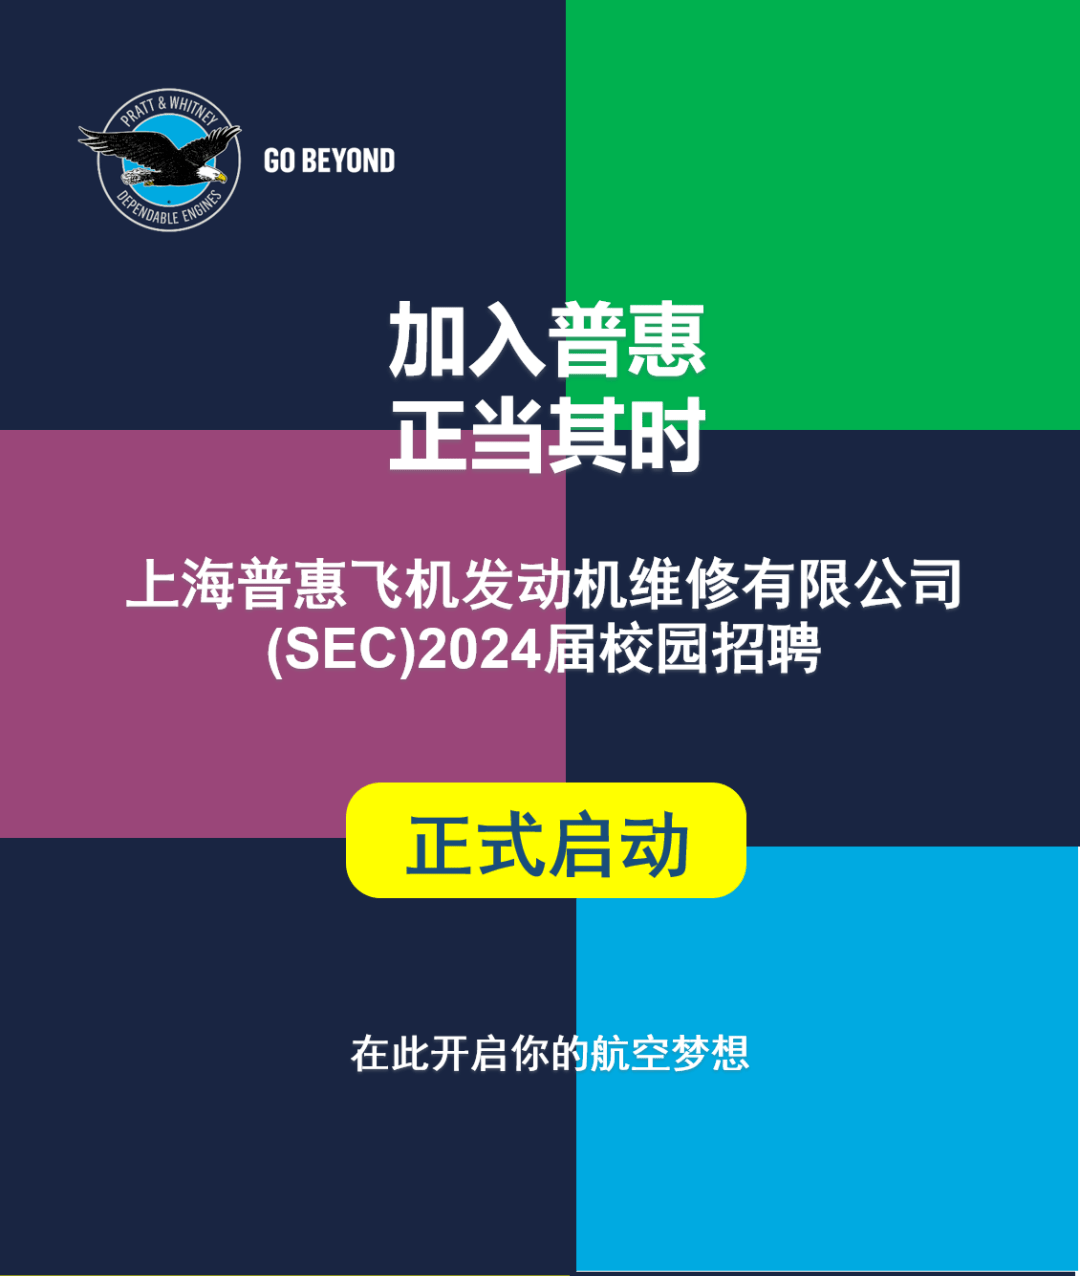 【民航招聘】上海普惠发动机维修维修有限公司机务岗位2024校招